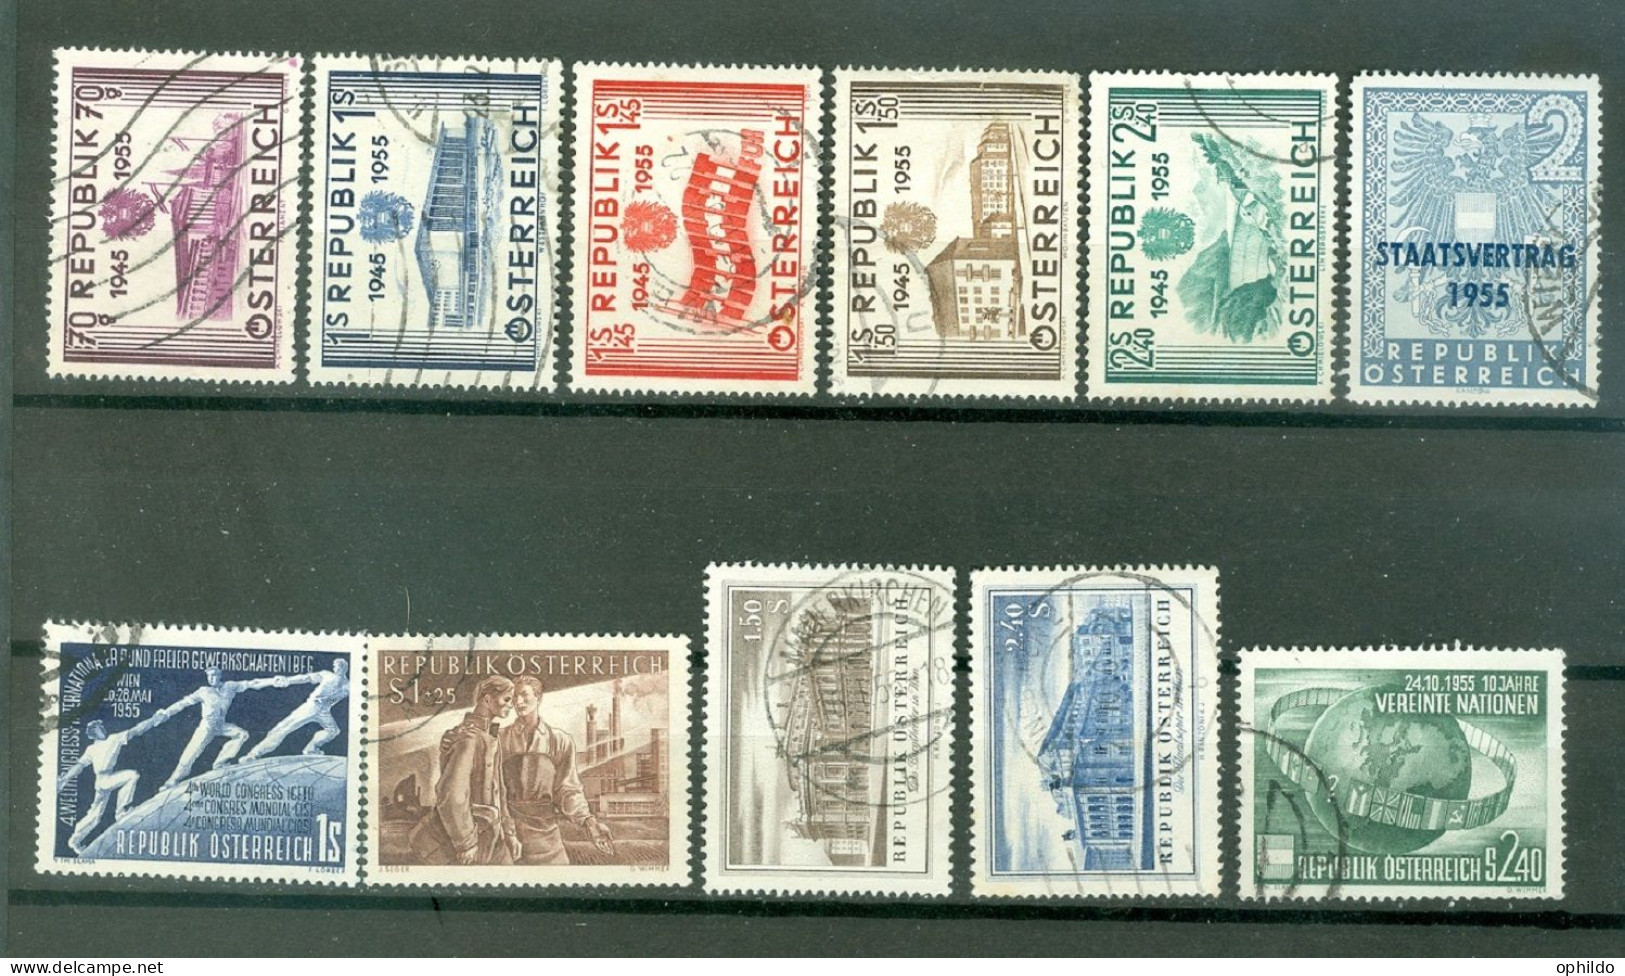 Autriche  Lot Autriche Année 1955  Ob Tous Etats  - Used Stamps